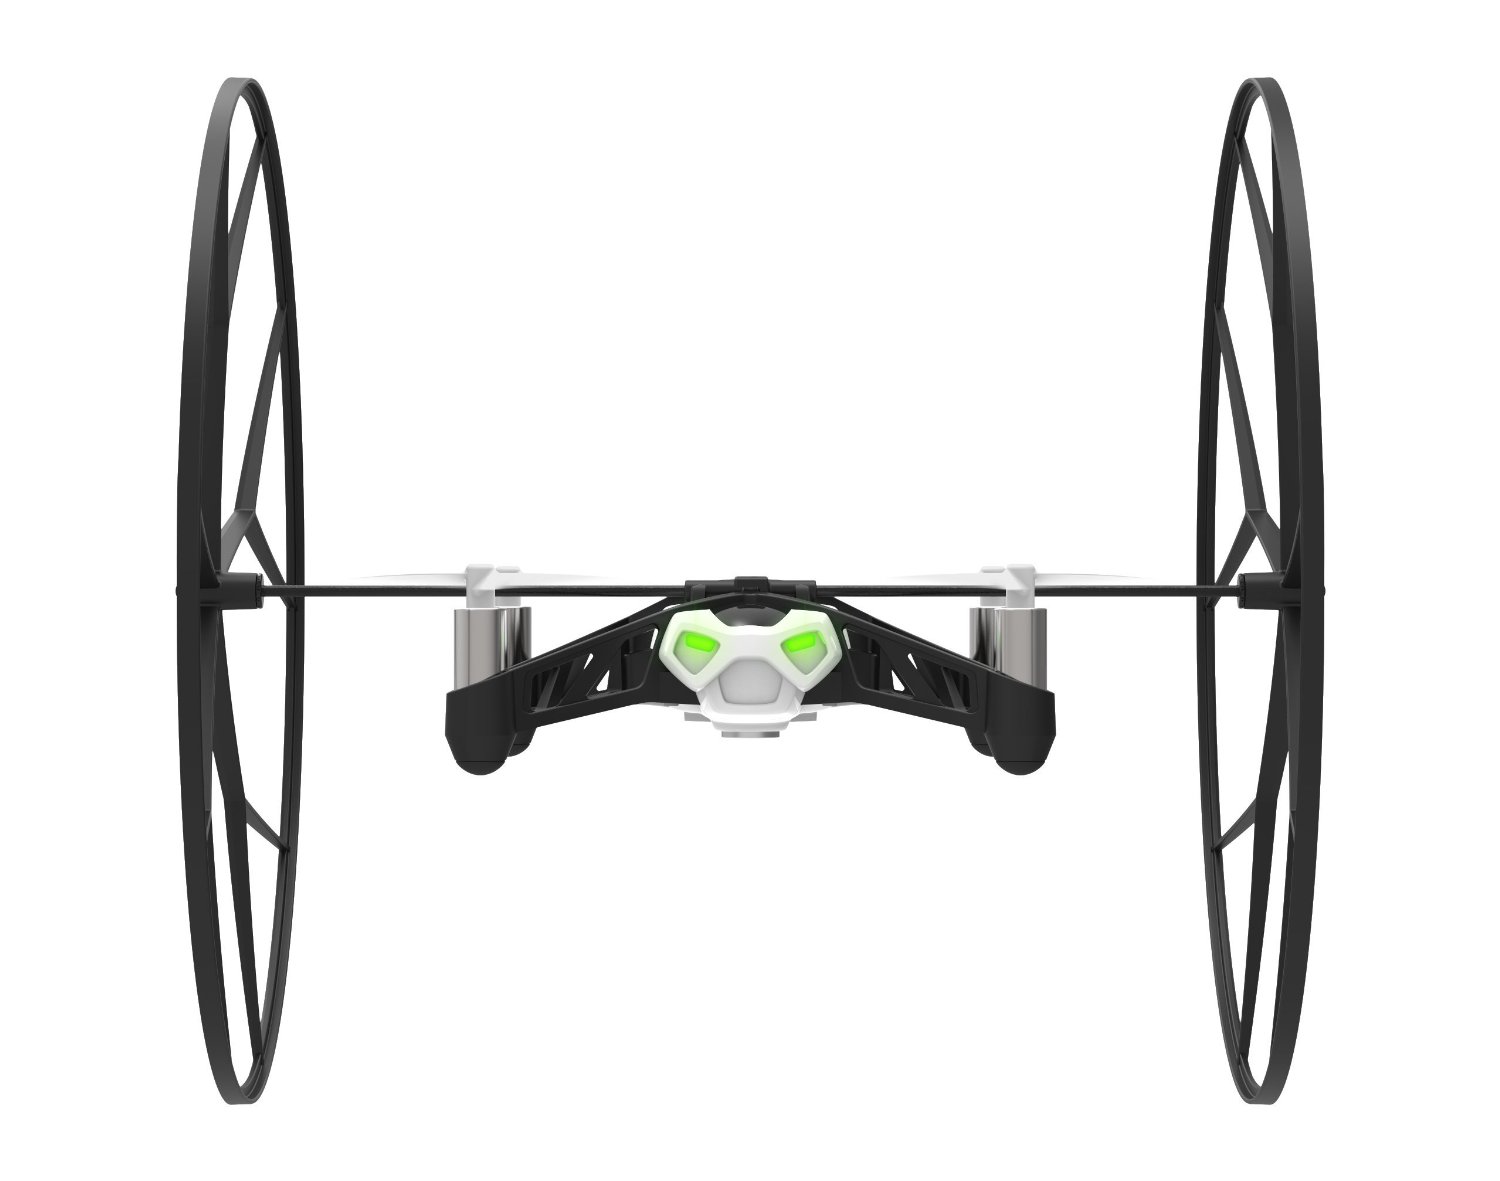 425degree_drone